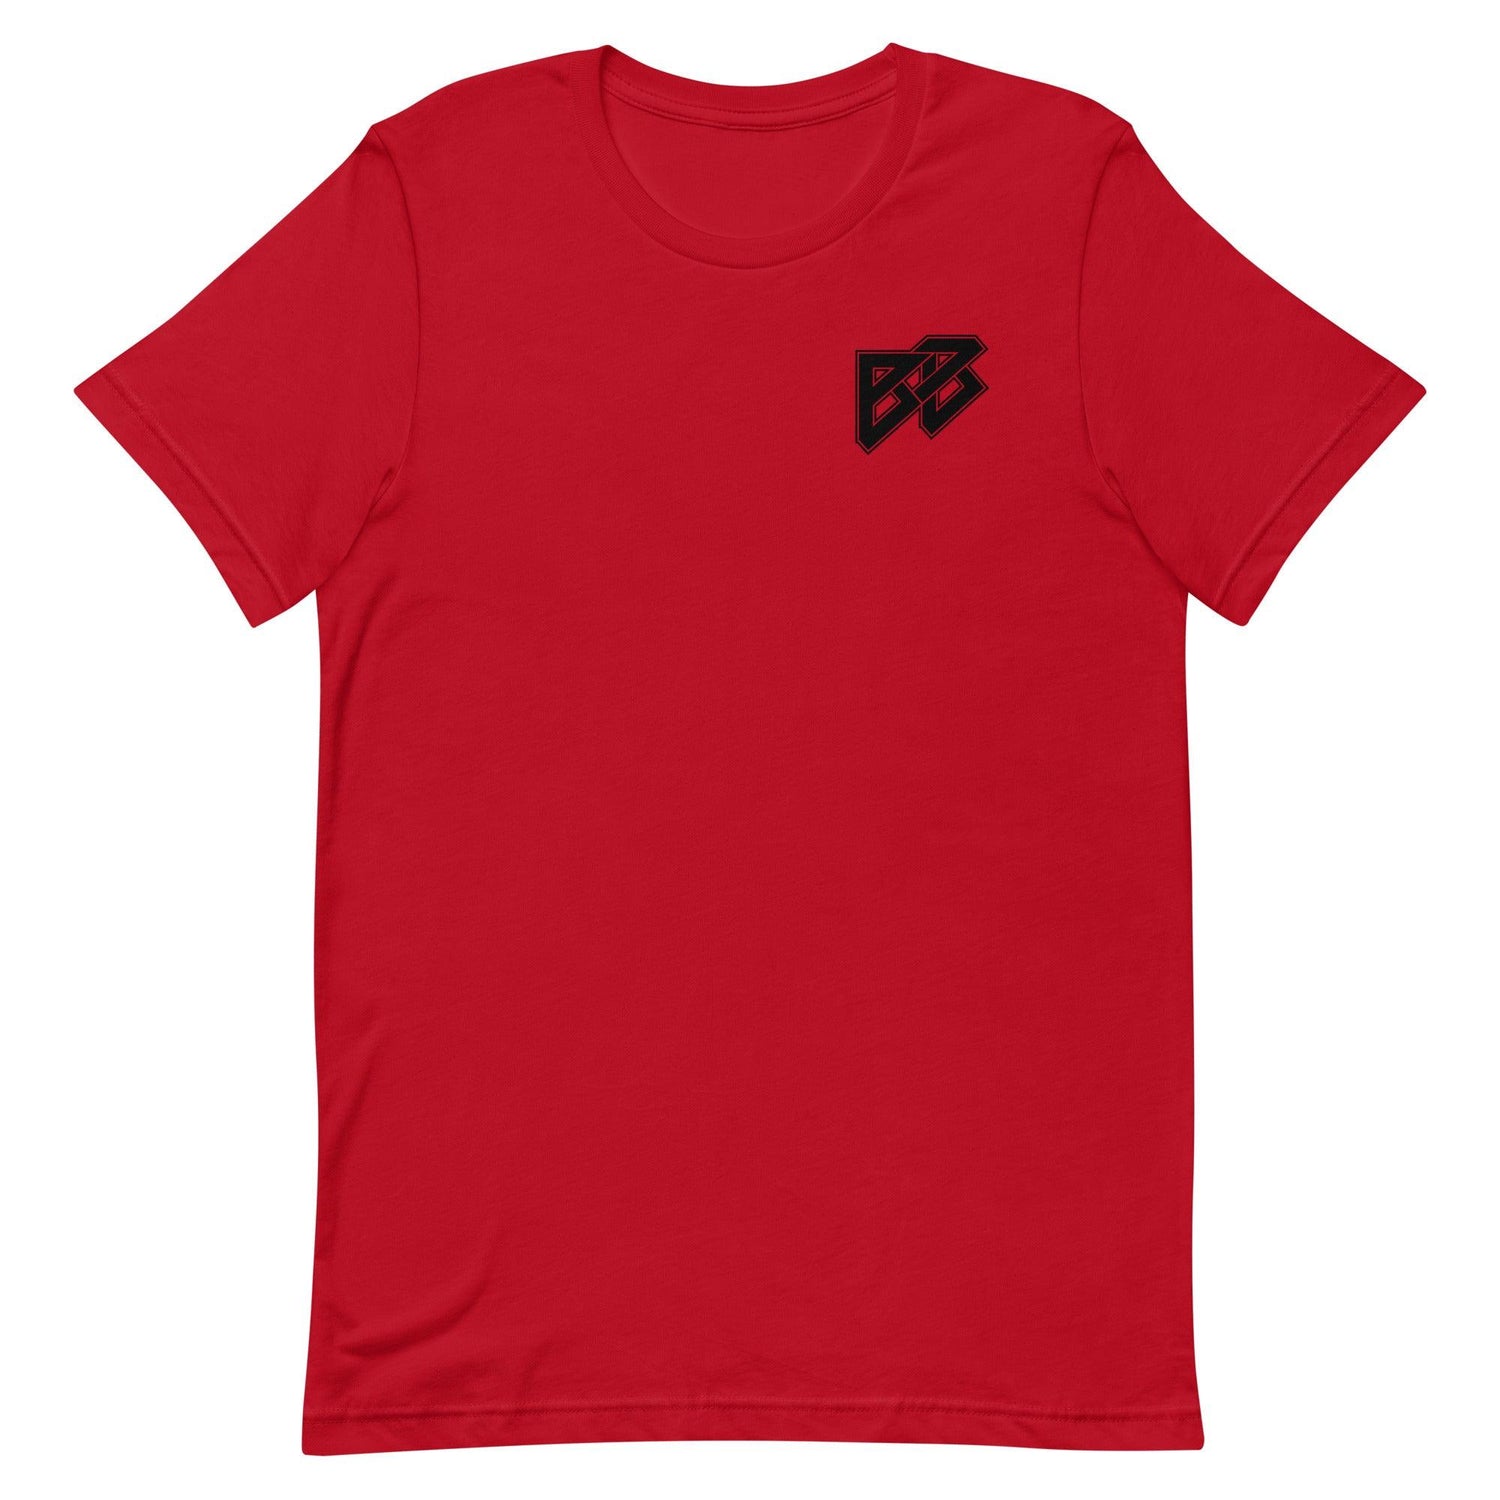 Brad Banks "BB7" t-shirt - Fan Arch